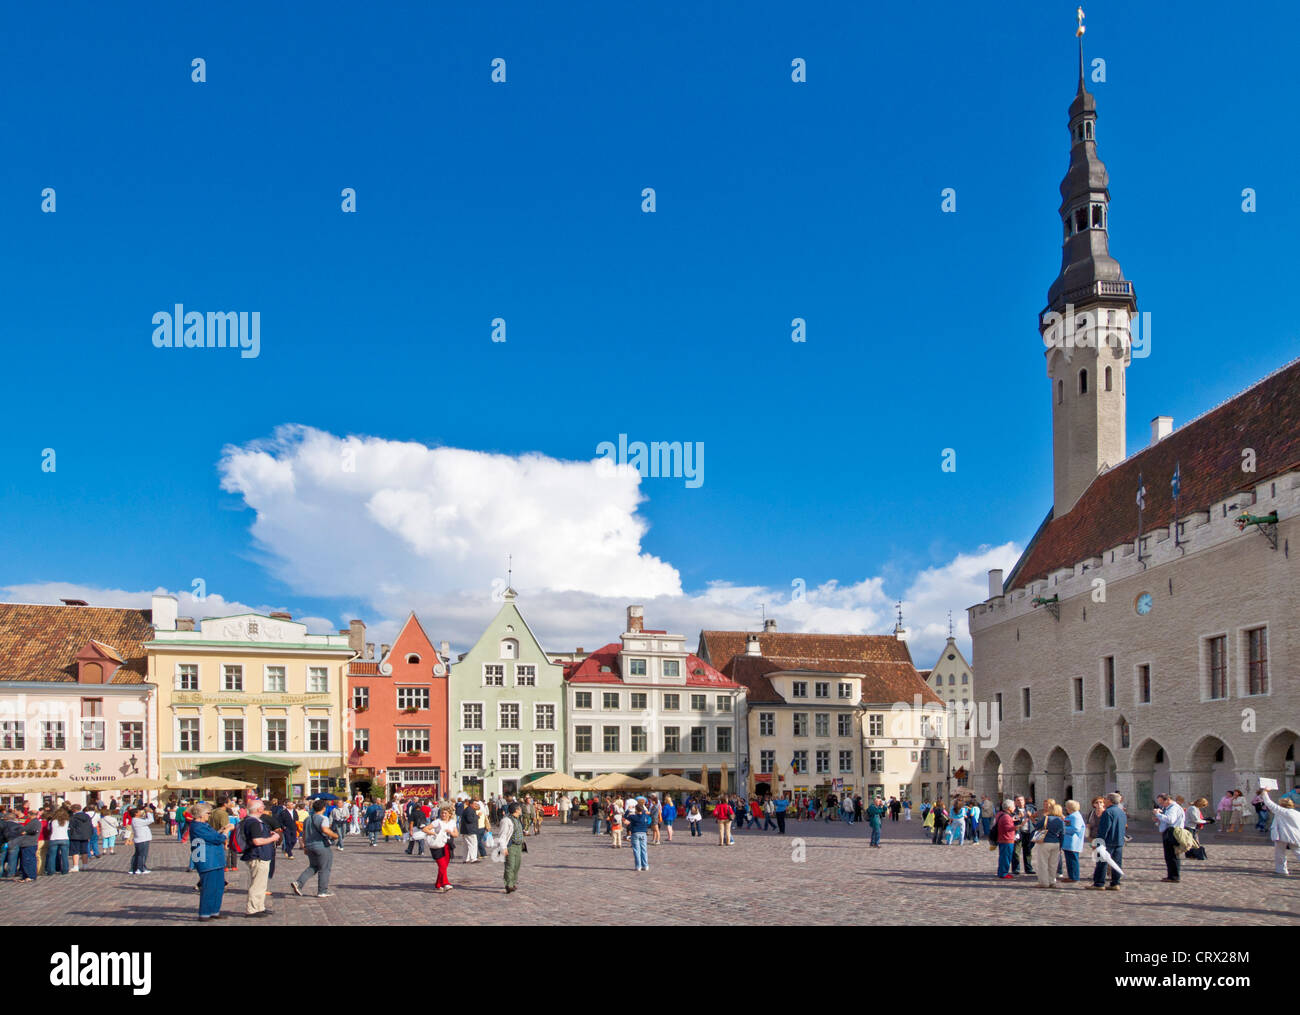 Place de la vieille ville médiévale de Tallinn raekoja plats baltes Estonie avec les touristes Banque D'Images